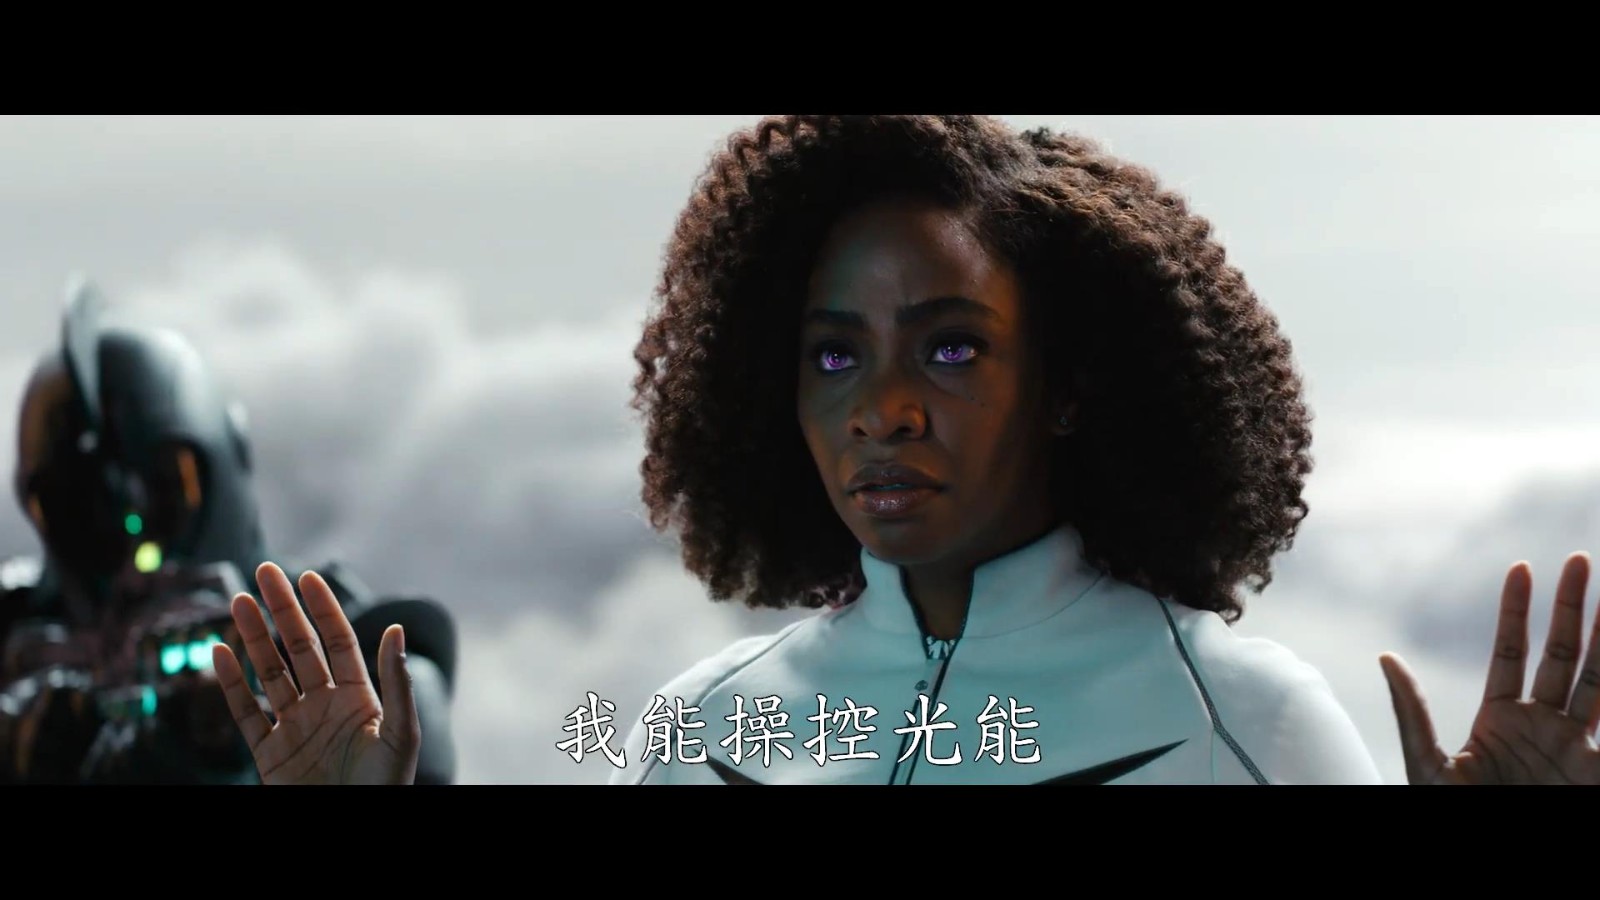 《惊奇队长2》中文特别预告和特辑 三代惊奇队长历程